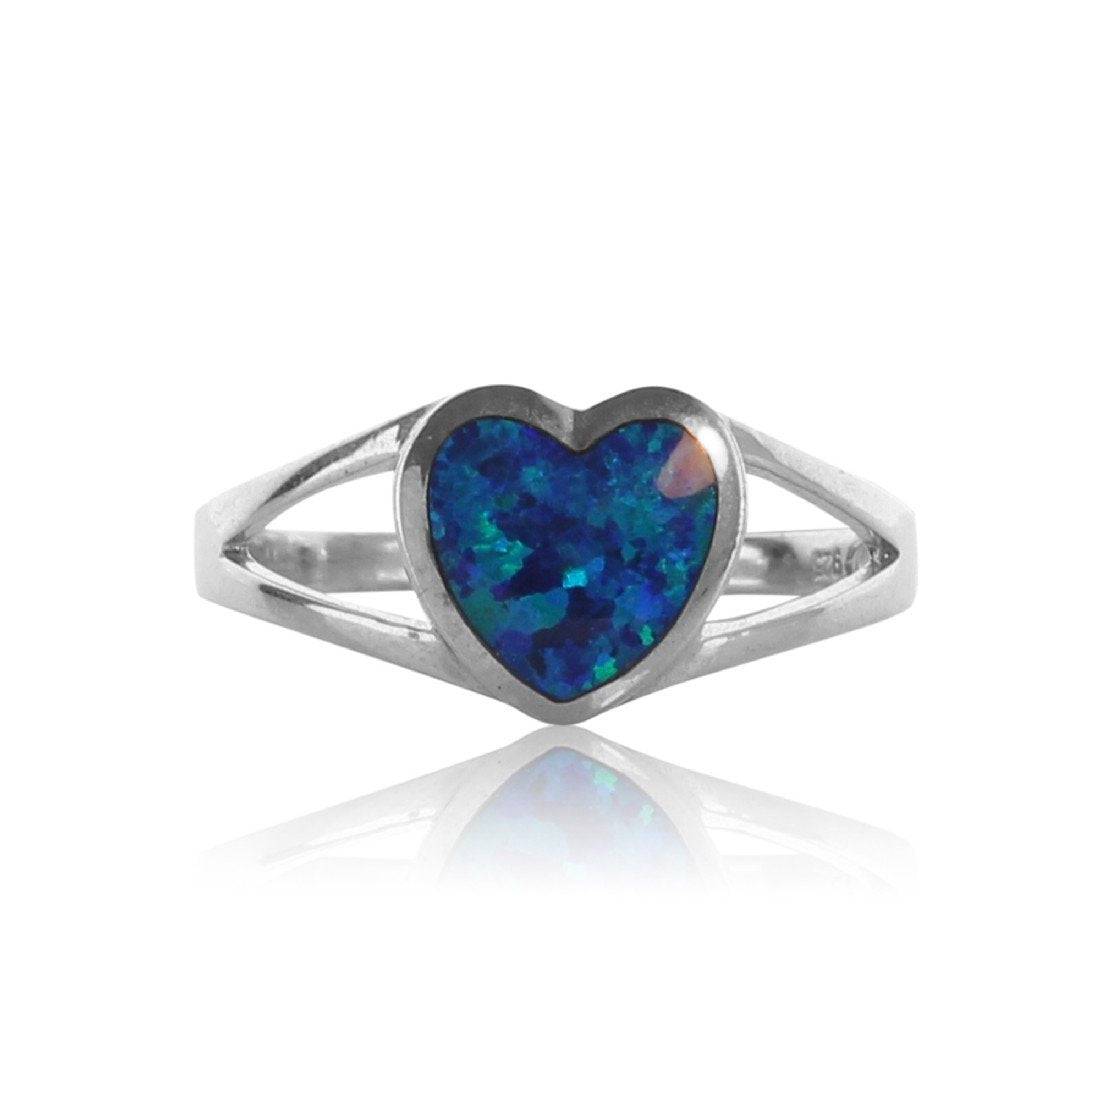 Sterling Silver Heart Opal ring - Masterpiece Jewellery Opal & Gems Sydney Australia | Online Shop